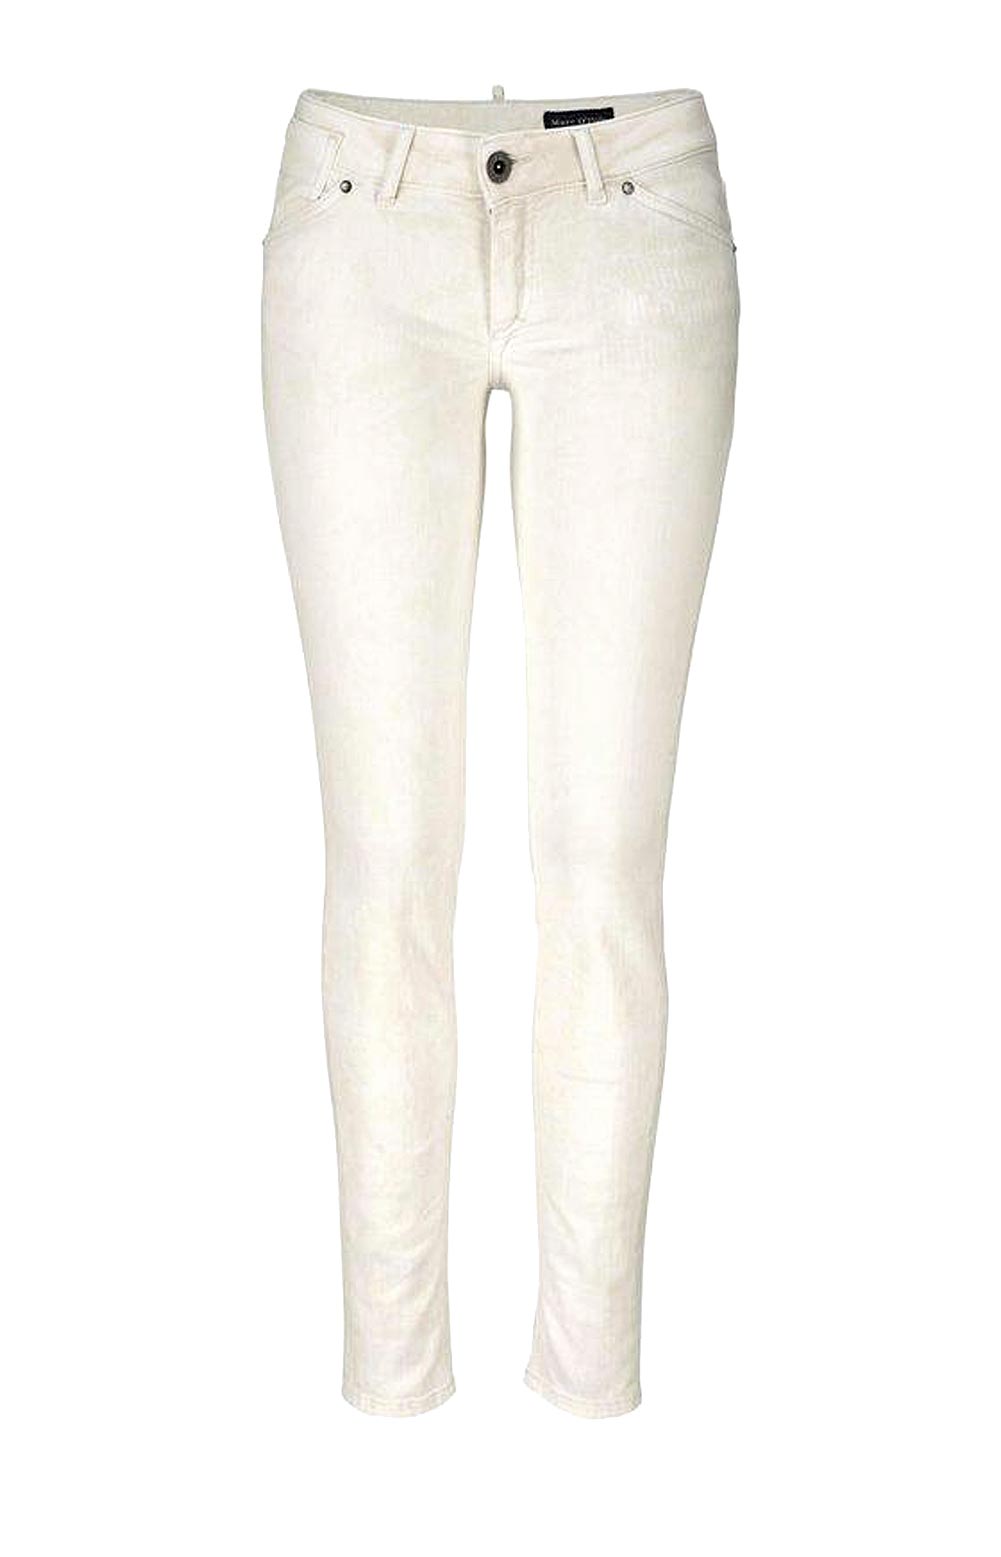 Marc O´polo Damen Marken-Jeans, ecru, 32 inch